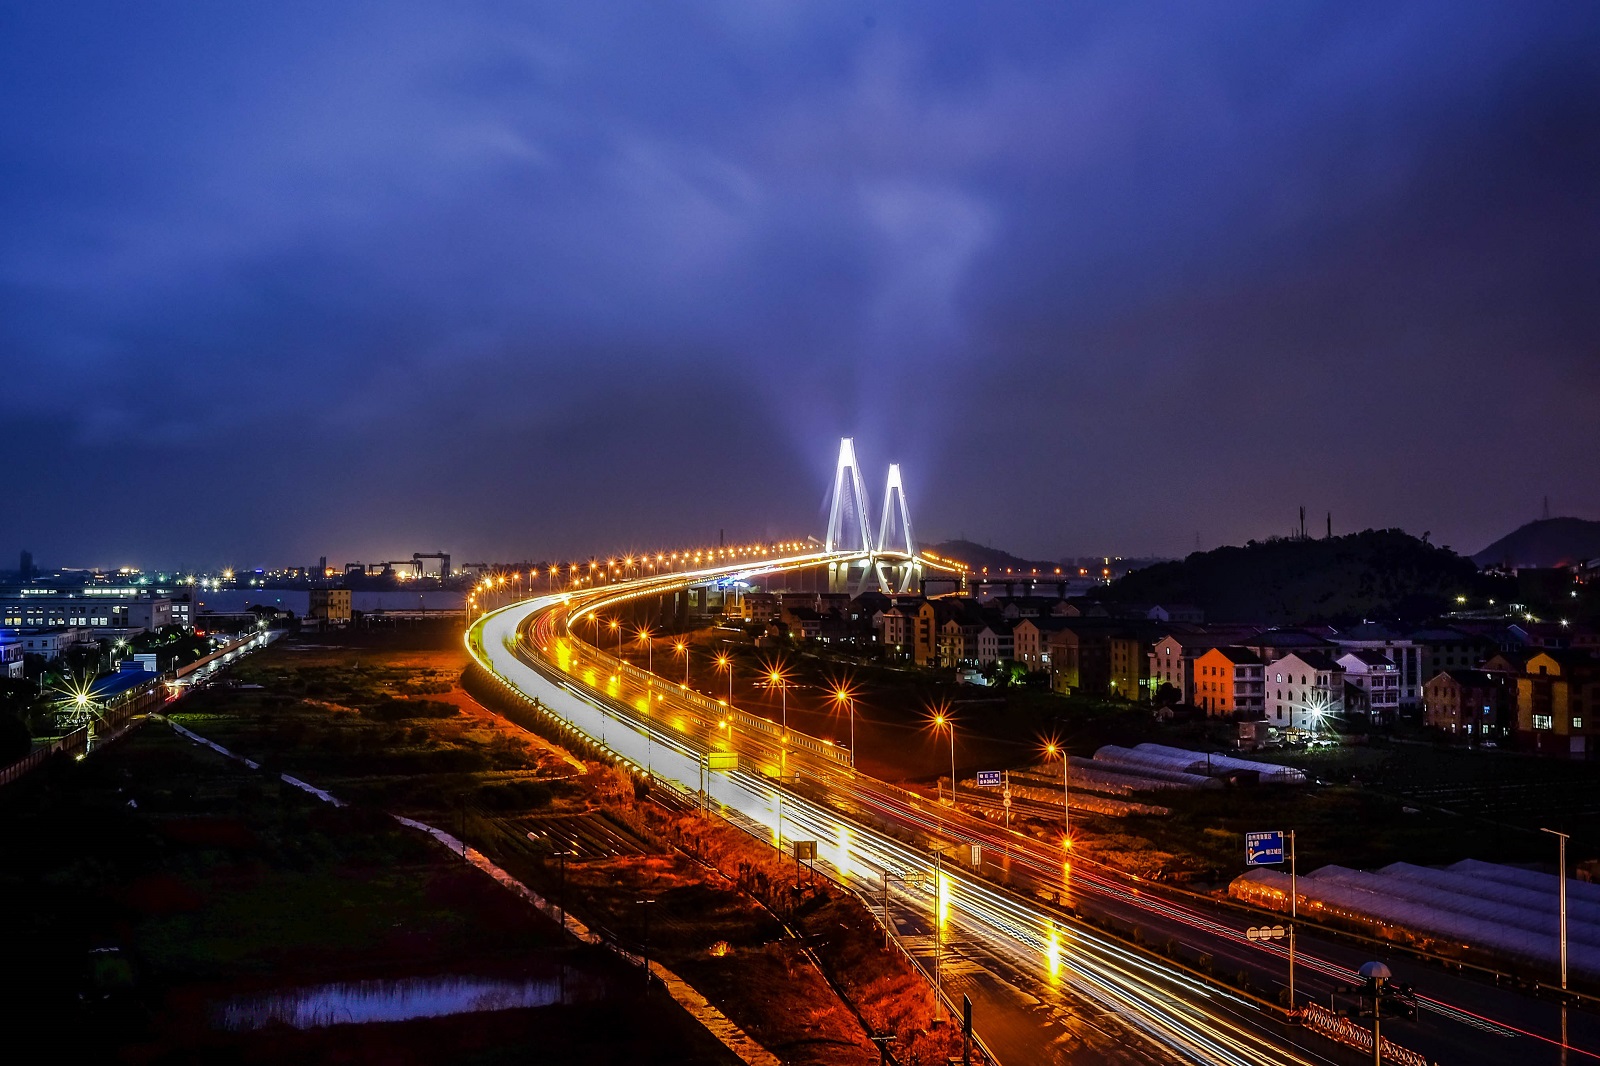 椒江大桥夜景图片